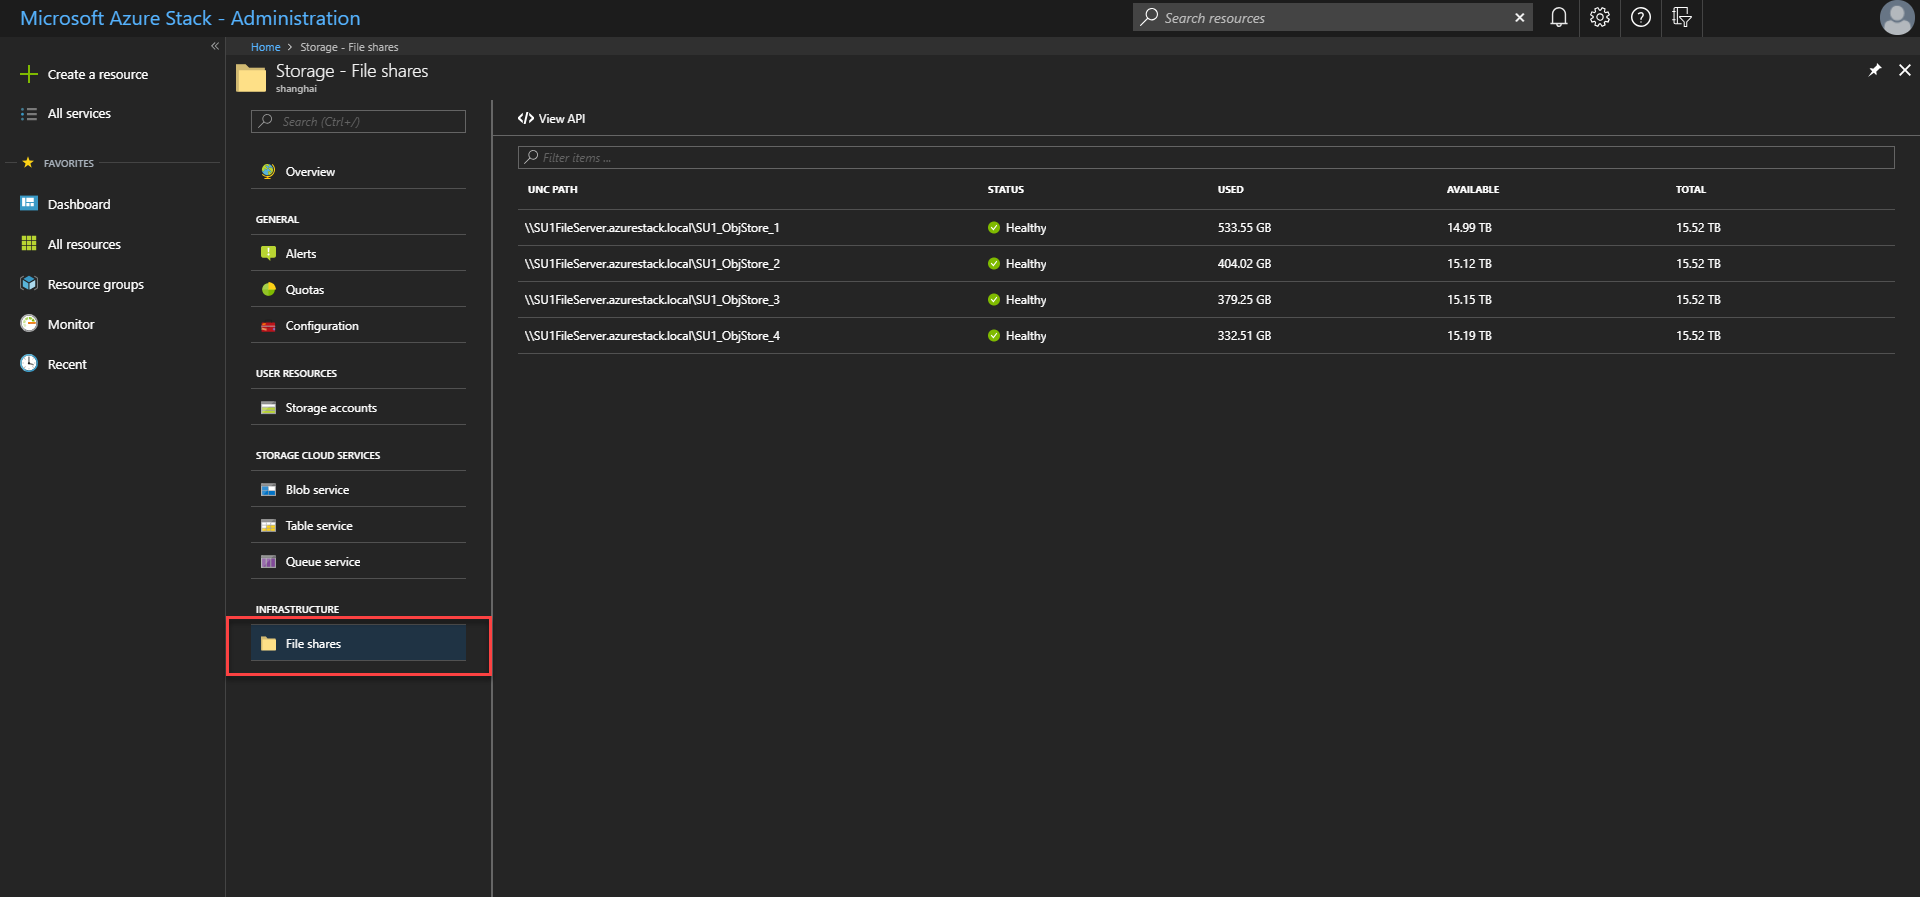 Contoh: Cuplikan layar berbagi file penyimpanan di portal administrator Azure Stack Hub.